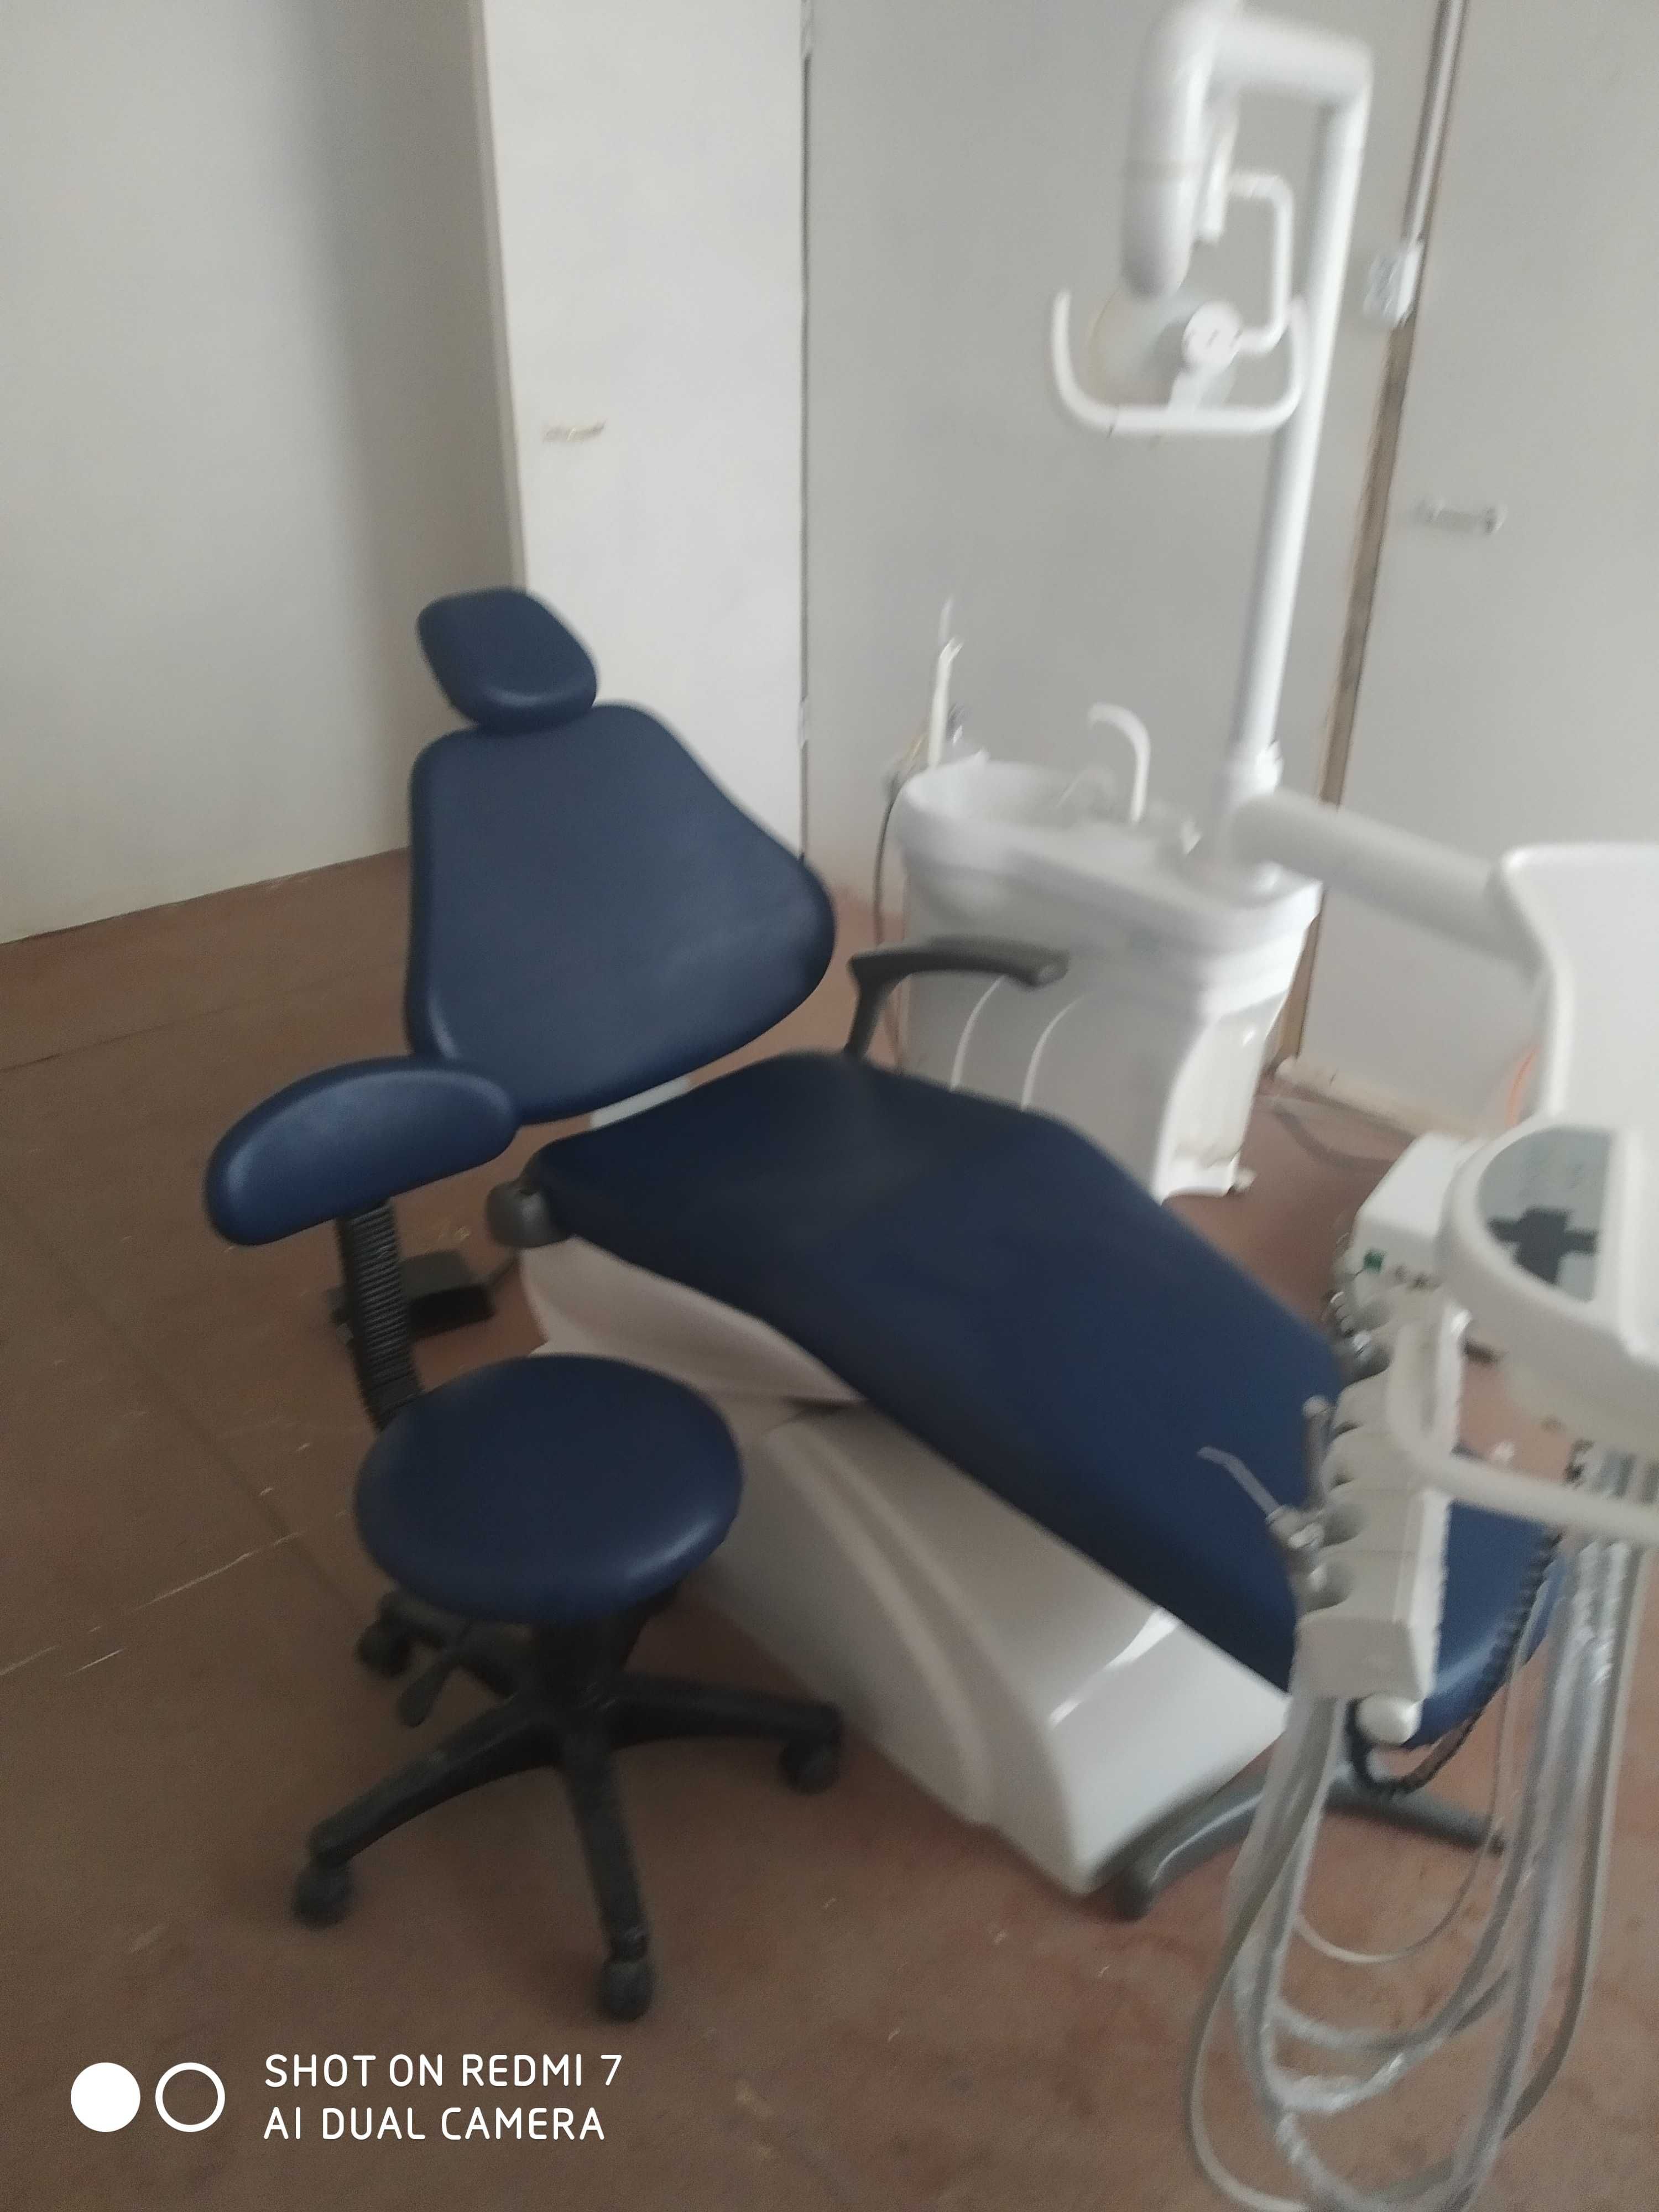 стоматологически кресло